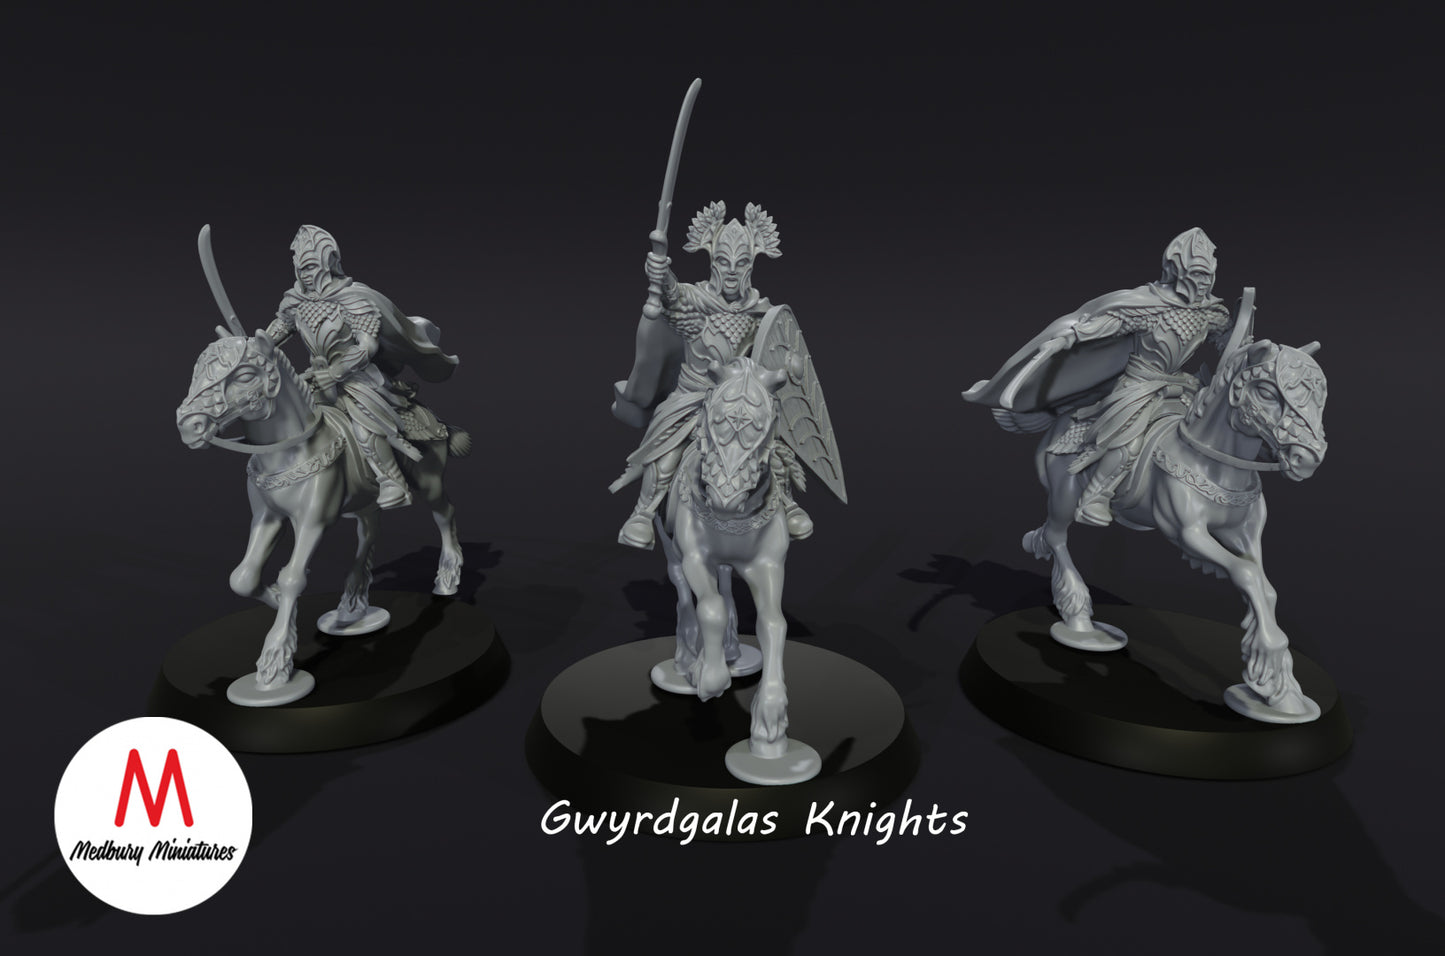 Gwyrdgalas Knights